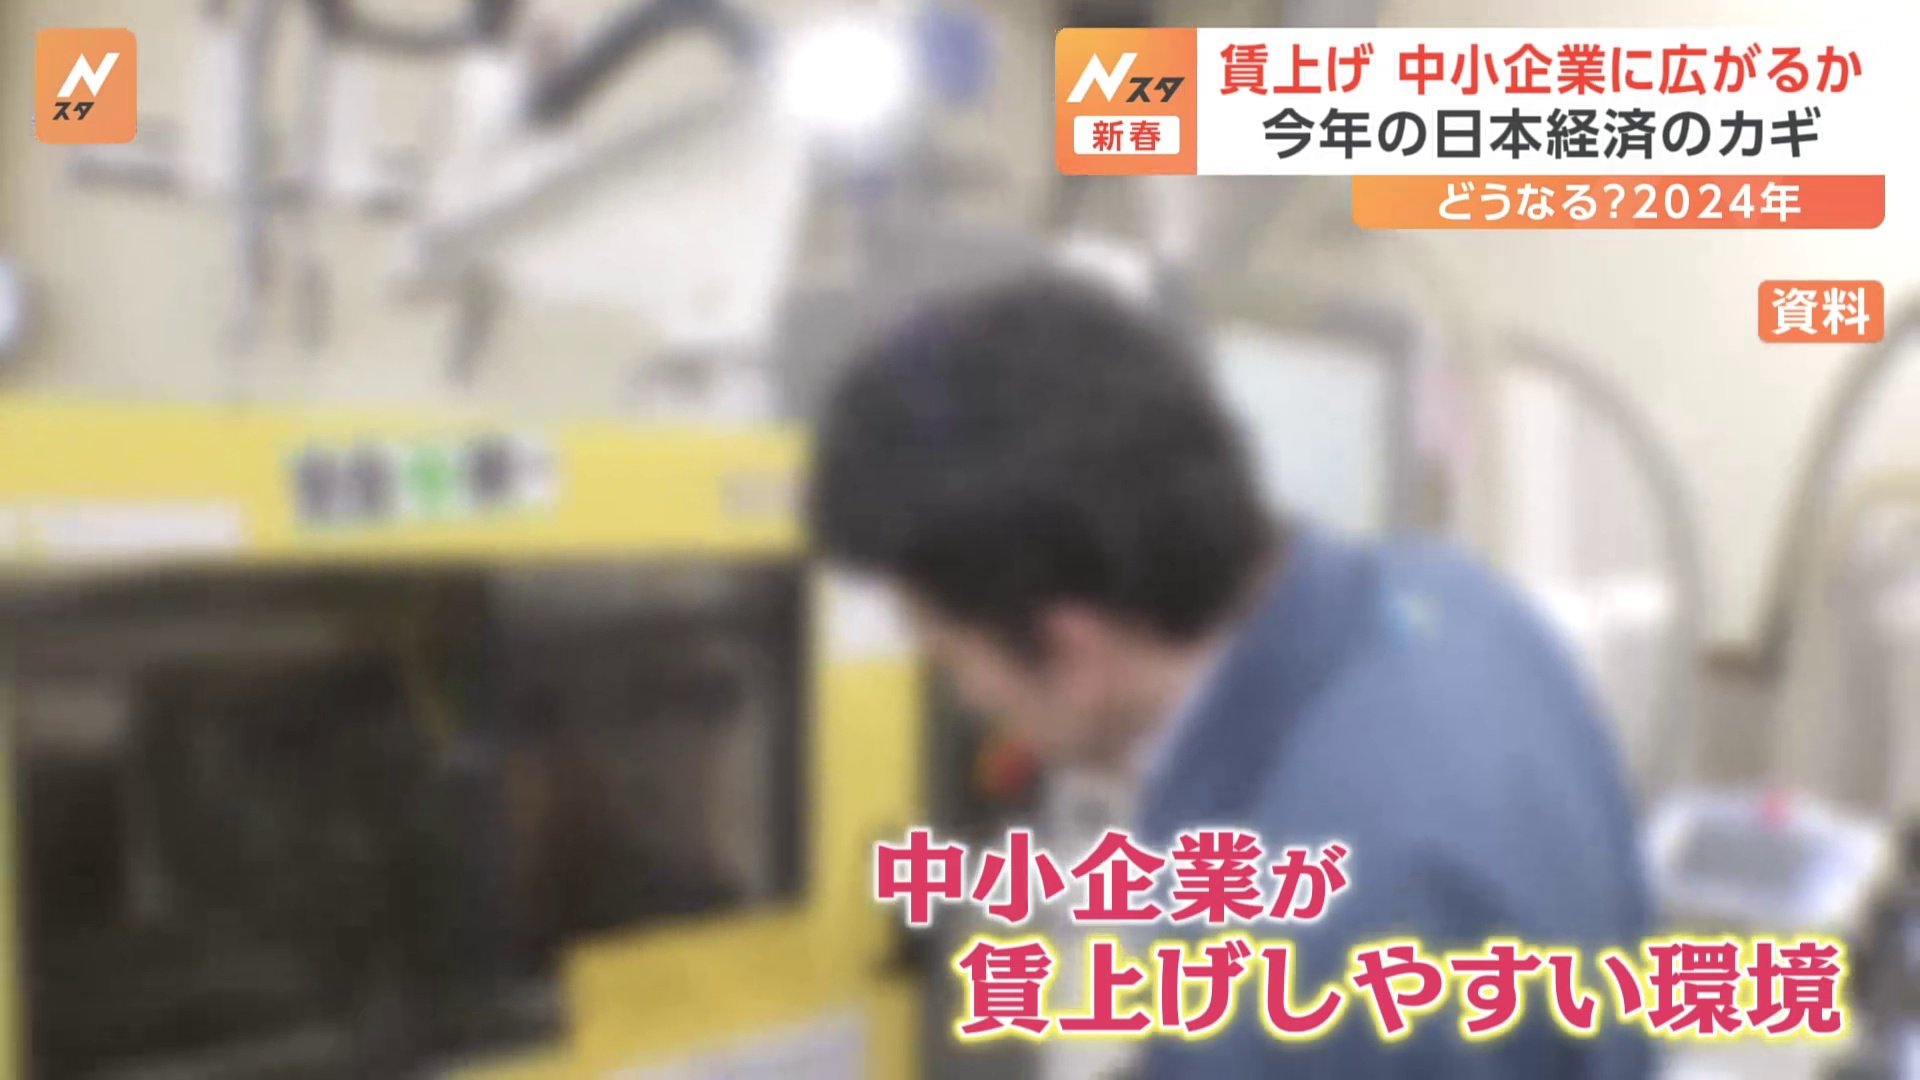 賃上げ “中小企業にも広げられるか”が今年の日本経済のカギ